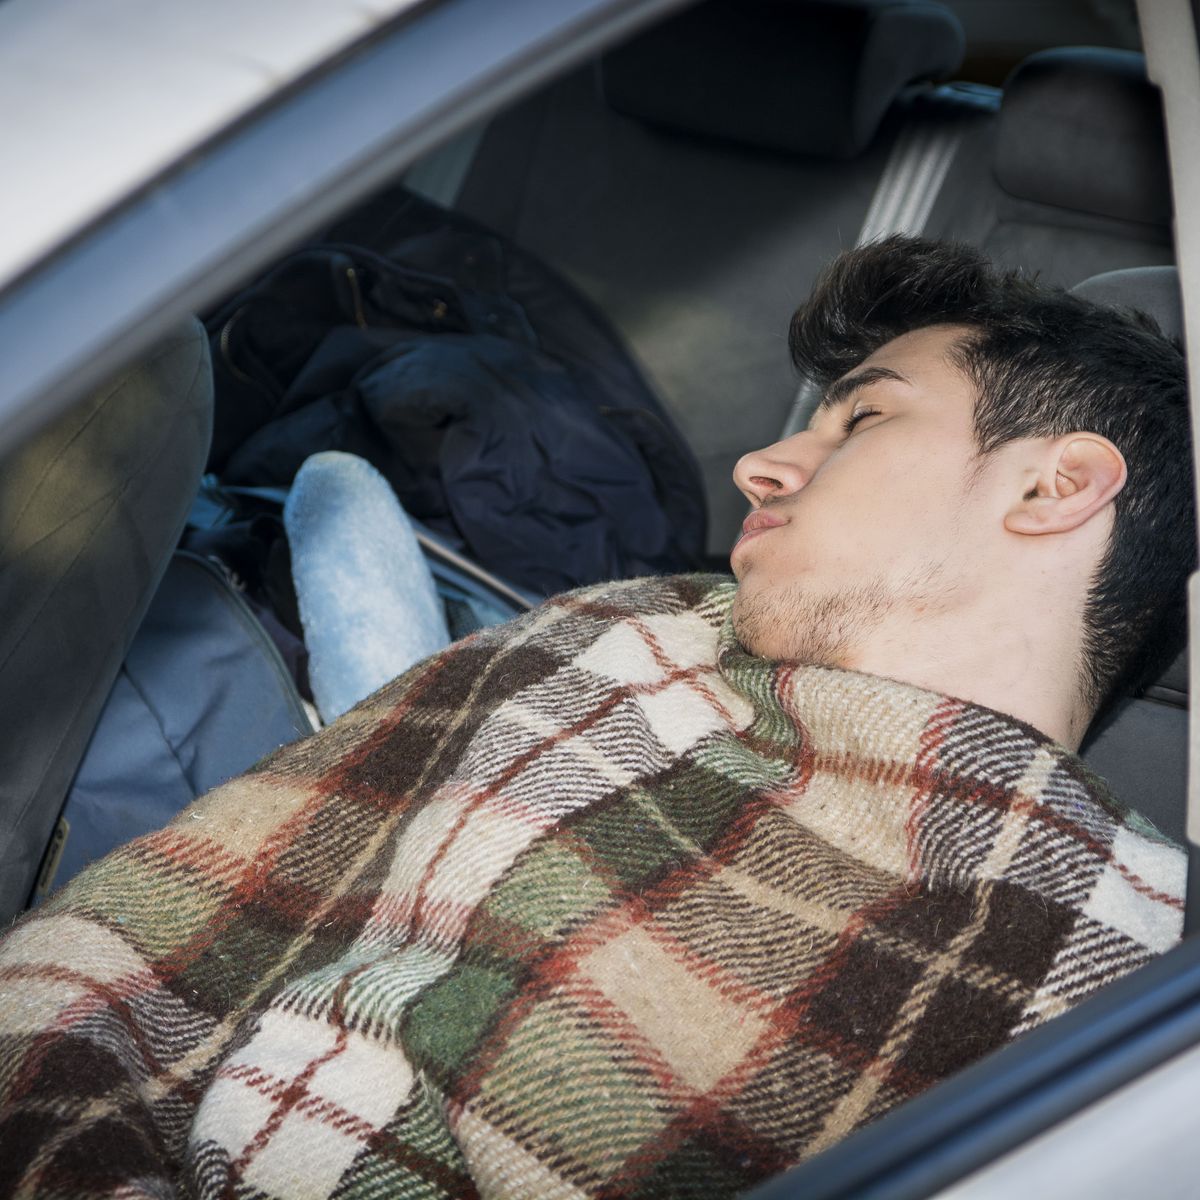 Se puede dormir en el coche? Esto dice la ley de la DGT